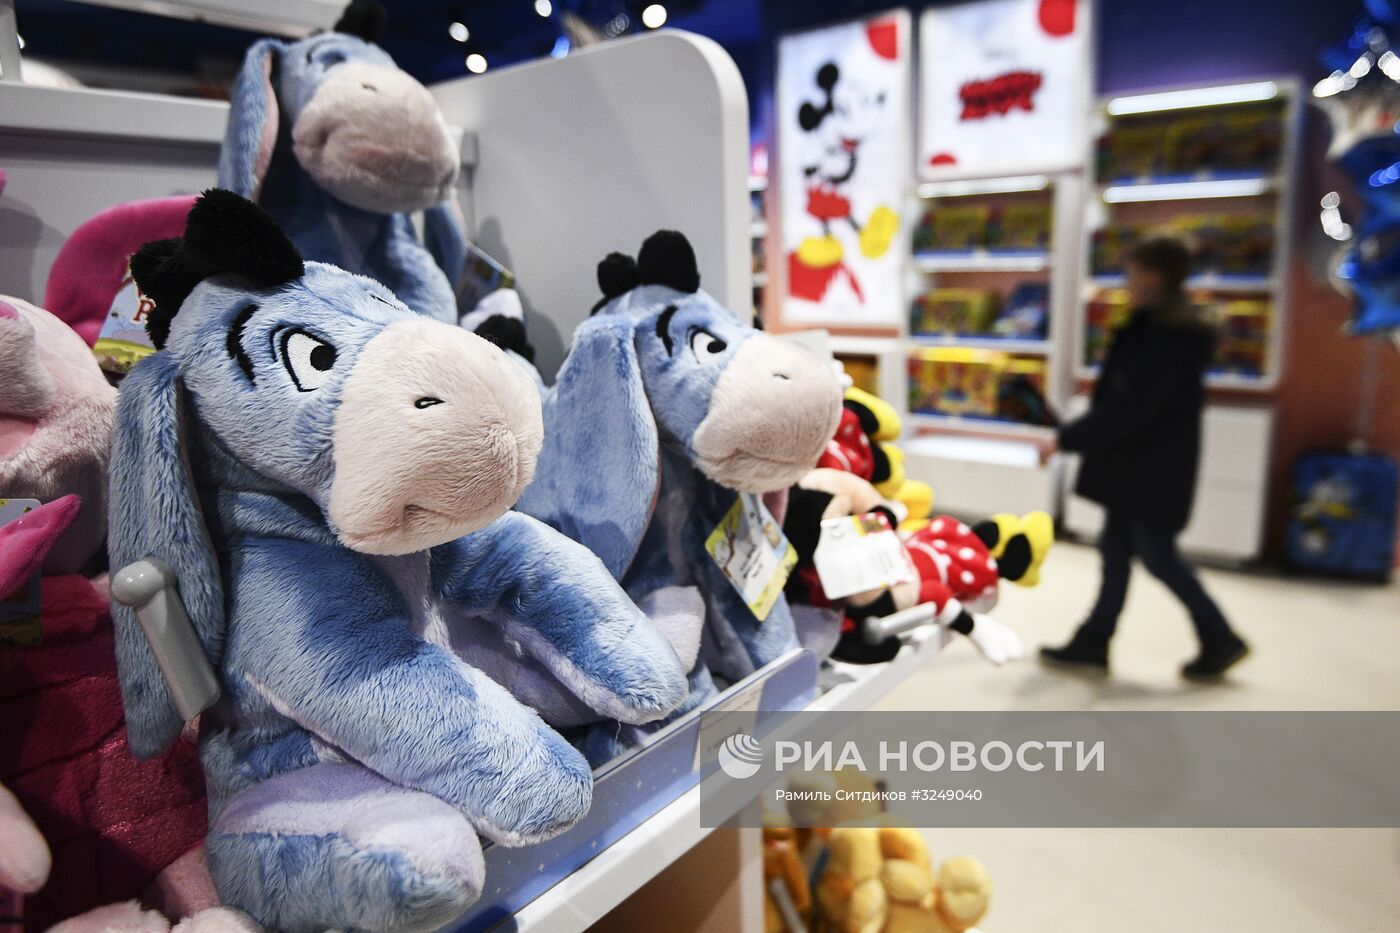 Фирменный магазин Disney открылся в Москве